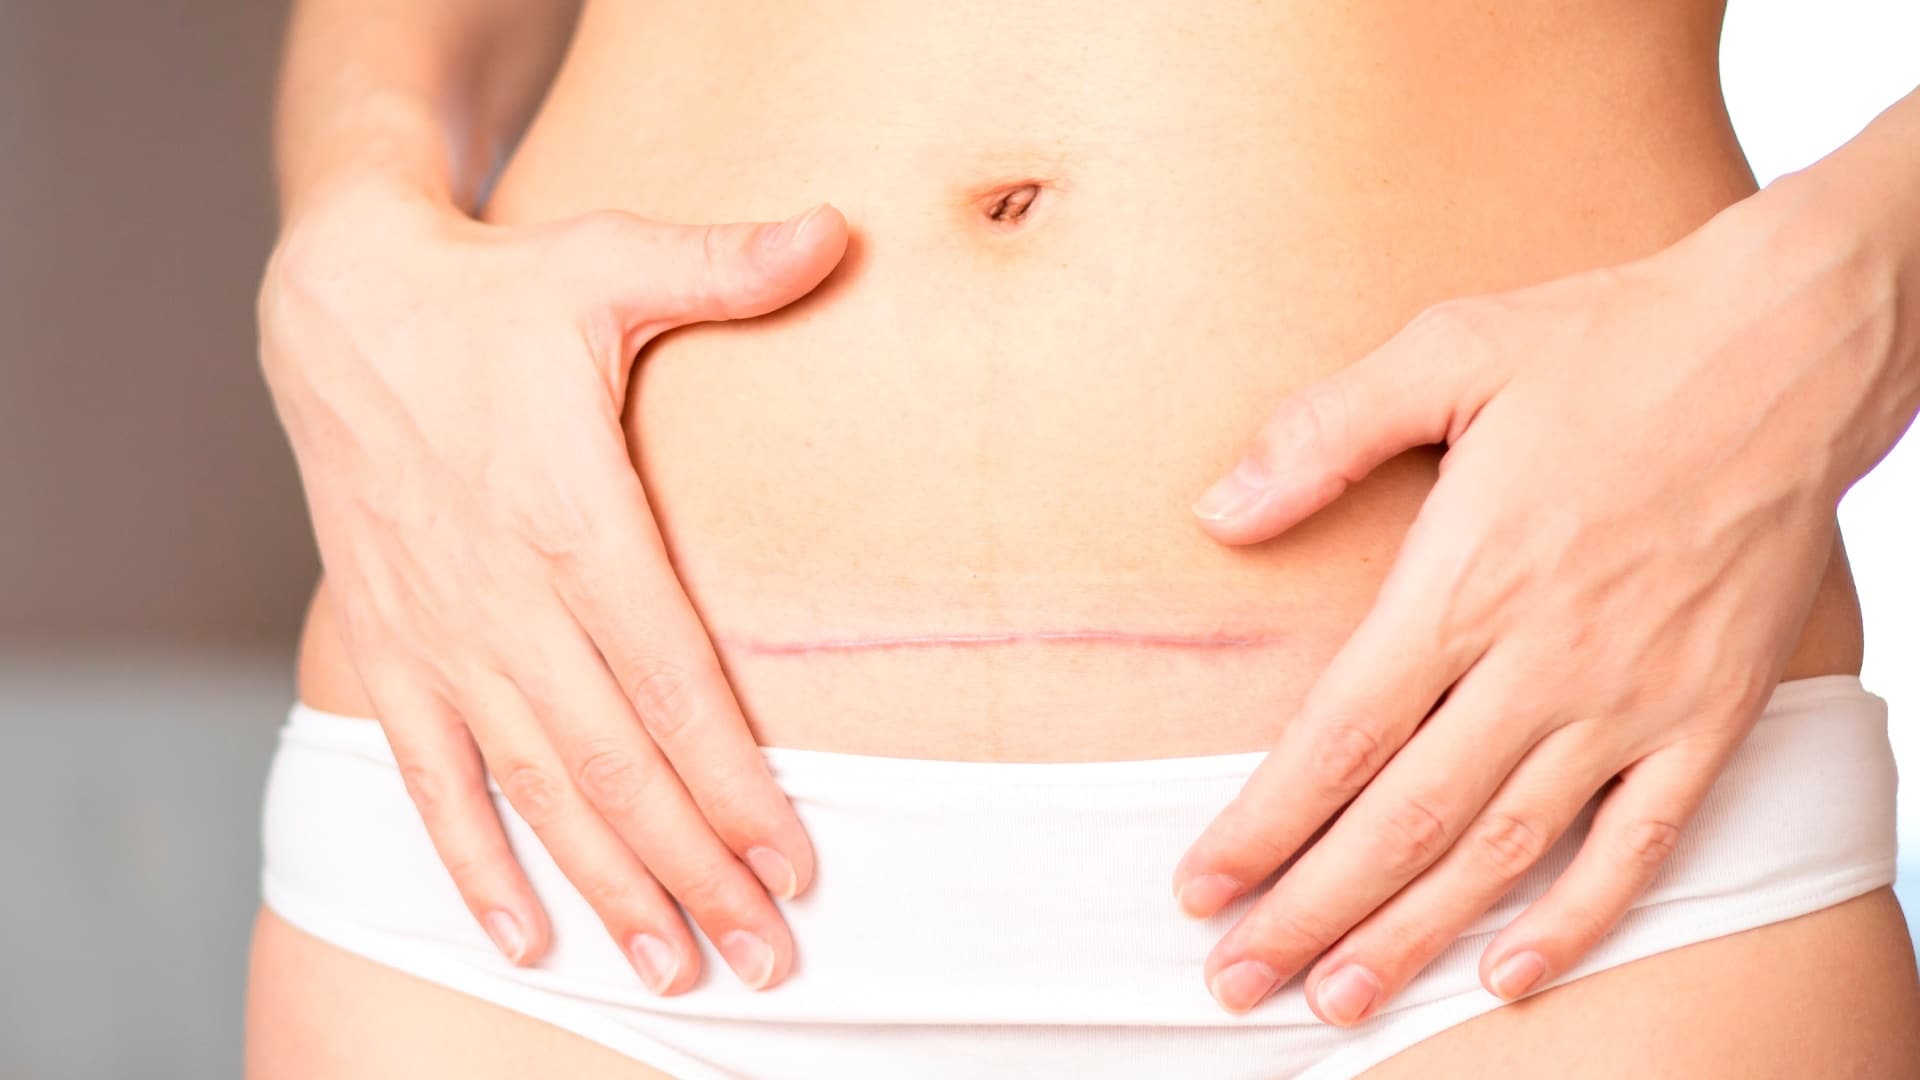 Cicatriz da cesárea: 3 problemas comuns e como resolver - Revista Crescer